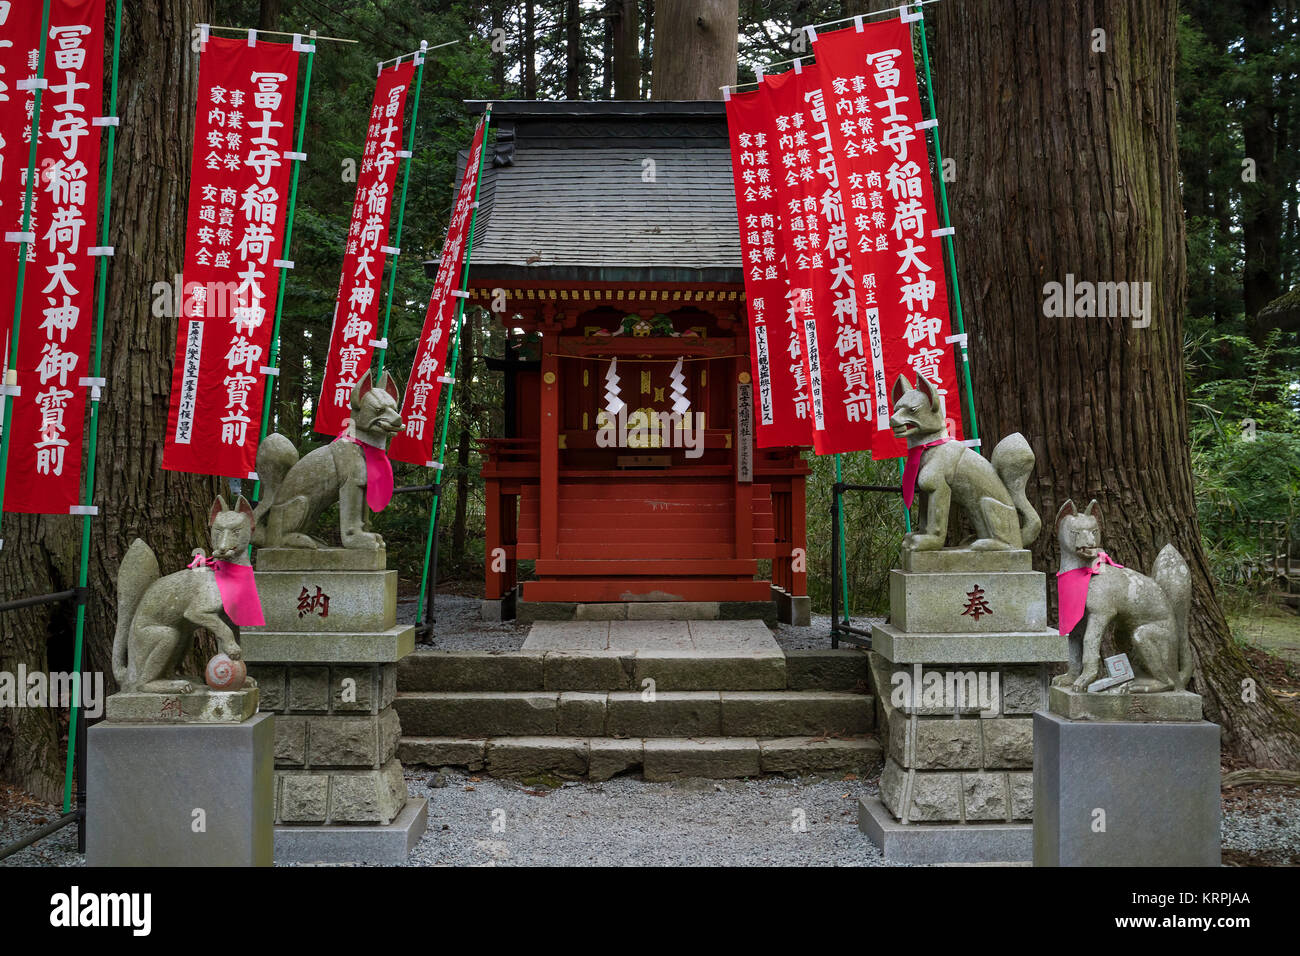 Ciudad de Fujiyoshida, Japón, 13 de junio de 2017; Kitsunes votivas, fox figurillas, guardianes de animales delante de un santuario de Inari con rojo santuario banners Foto de stock